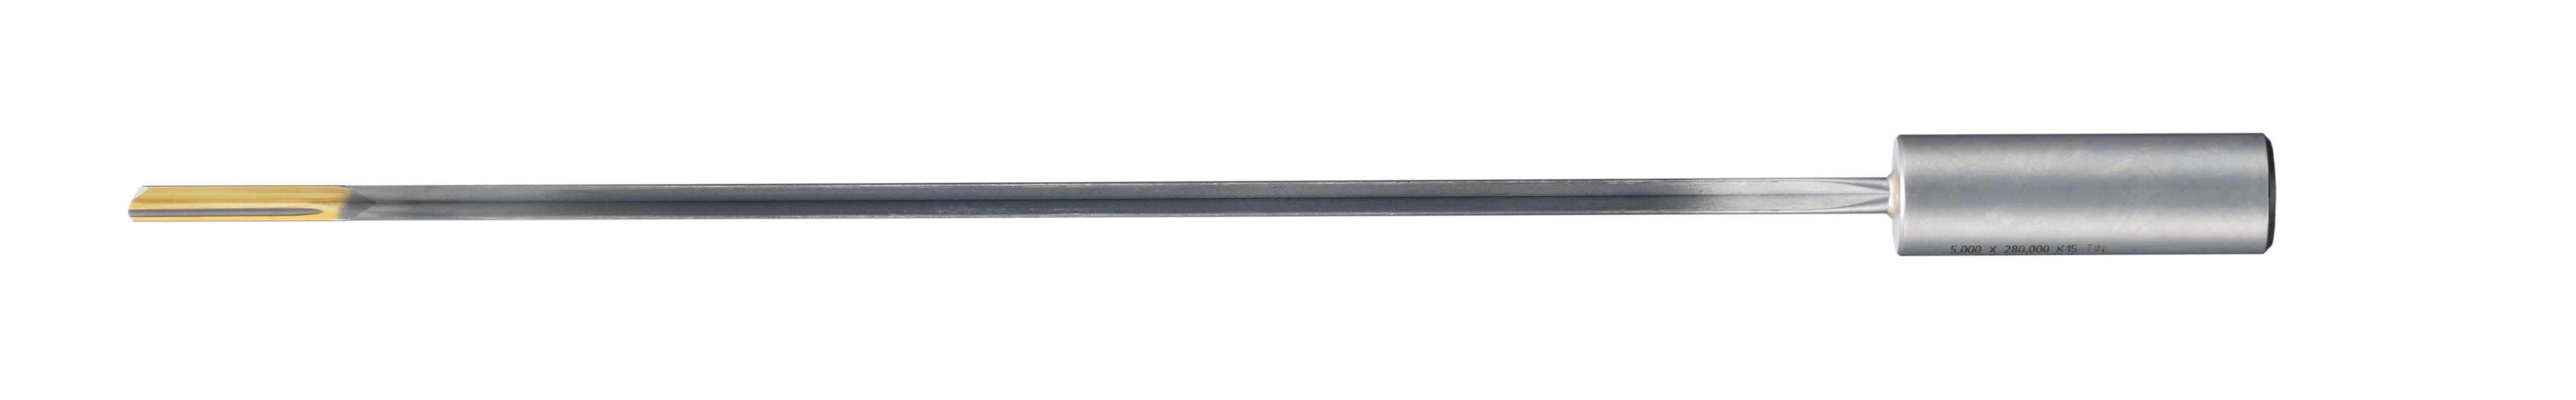 硬質合金固體鑽頭釺焊的槍鑽頭,EB80 5022